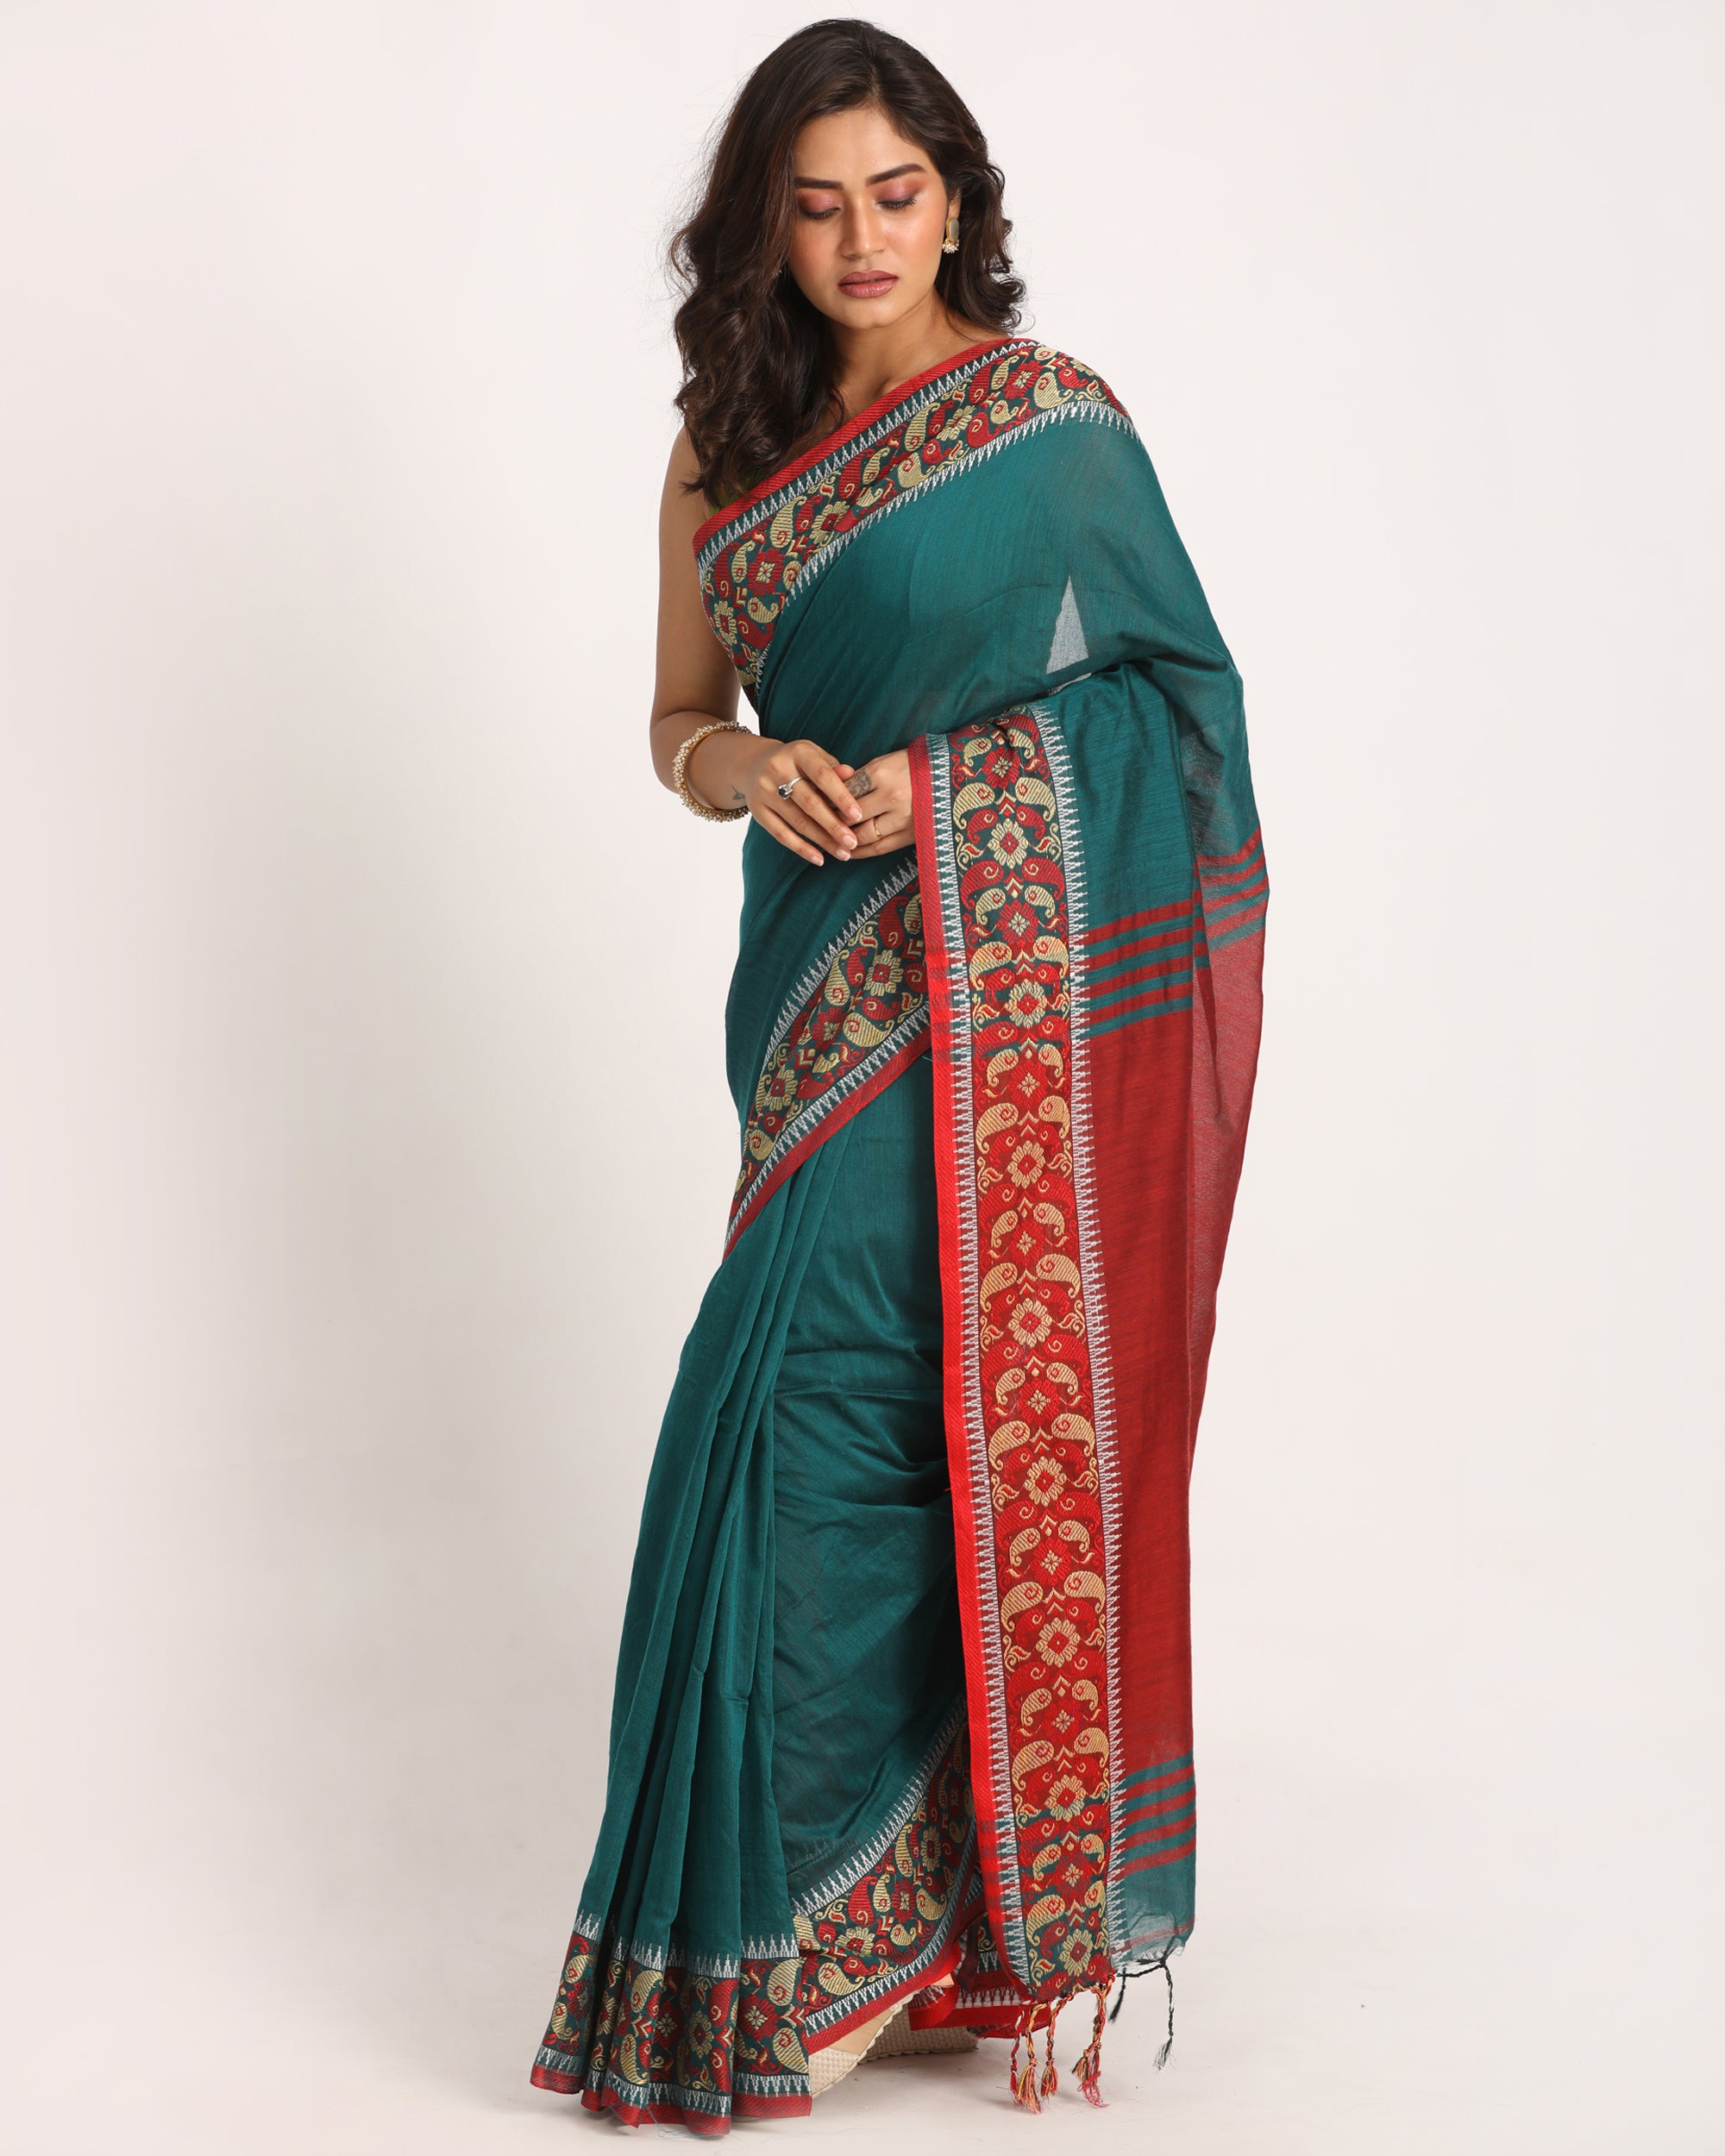 Women's Deep Teal Handloom Handspun Cotton Saree - Piyari Fashion